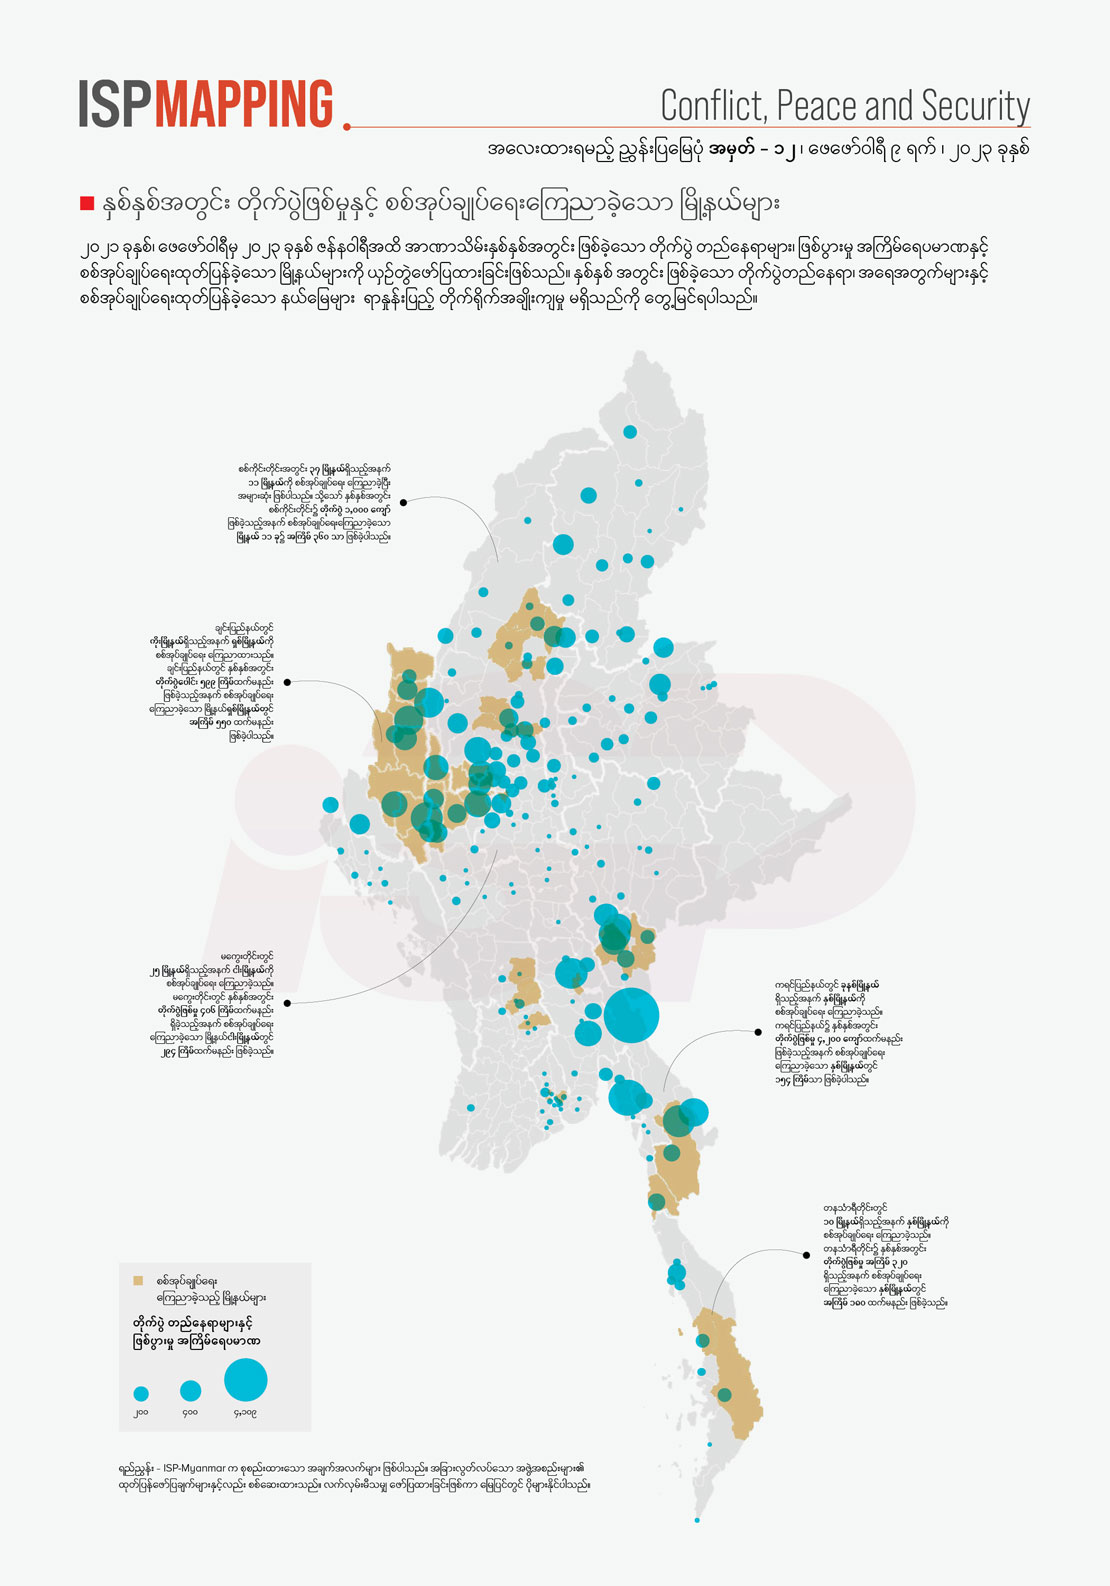 နှစ်နှစ်အတွင်း တိုက်ပွဲဖြစ်မှုနှင့် စစ်အုပ်ချုပ်ရေးကြေညာခဲ့သော မြို့နယ်များ